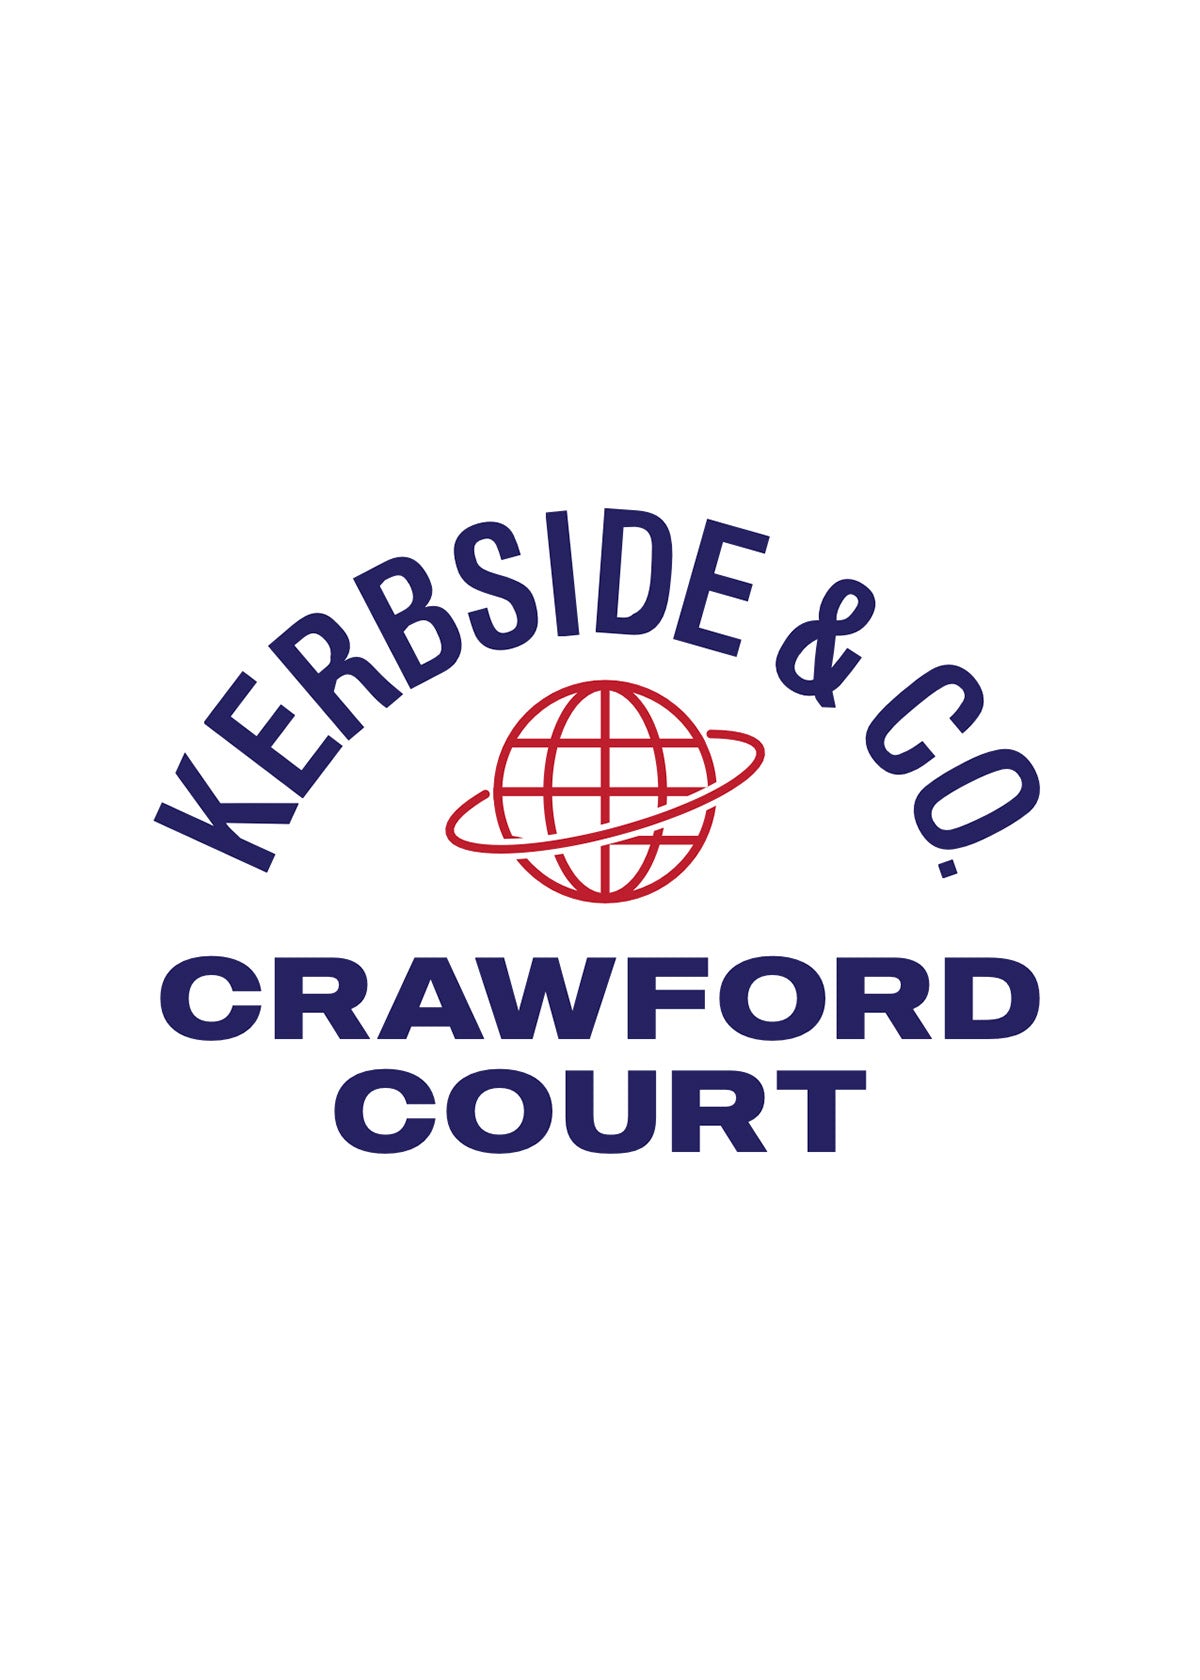 Crew Tee - Crawford Court